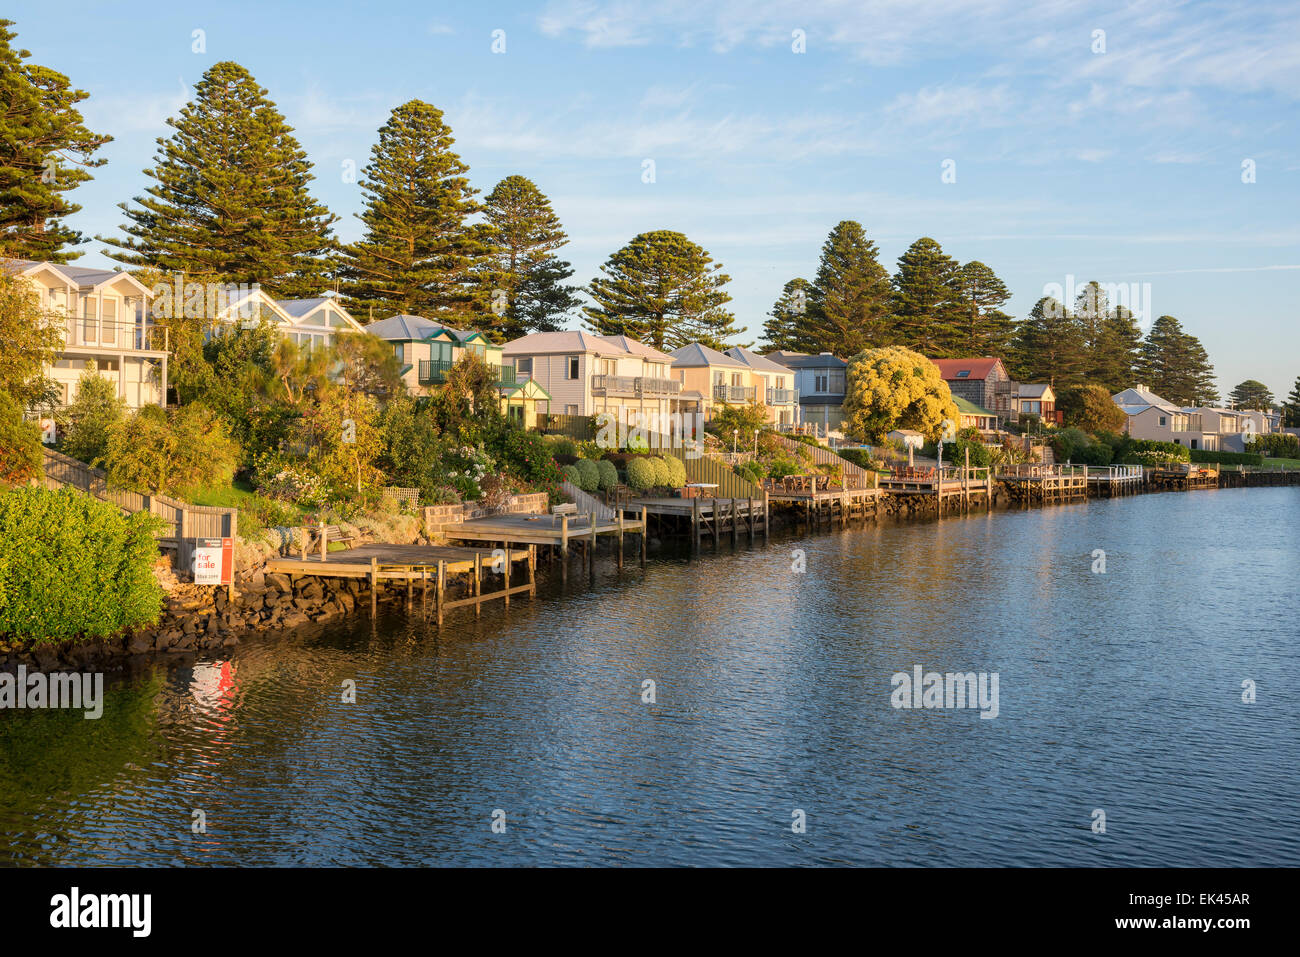 Le village de Port Fairy sur le Moyne River, Victoria Australie Banque D'Images